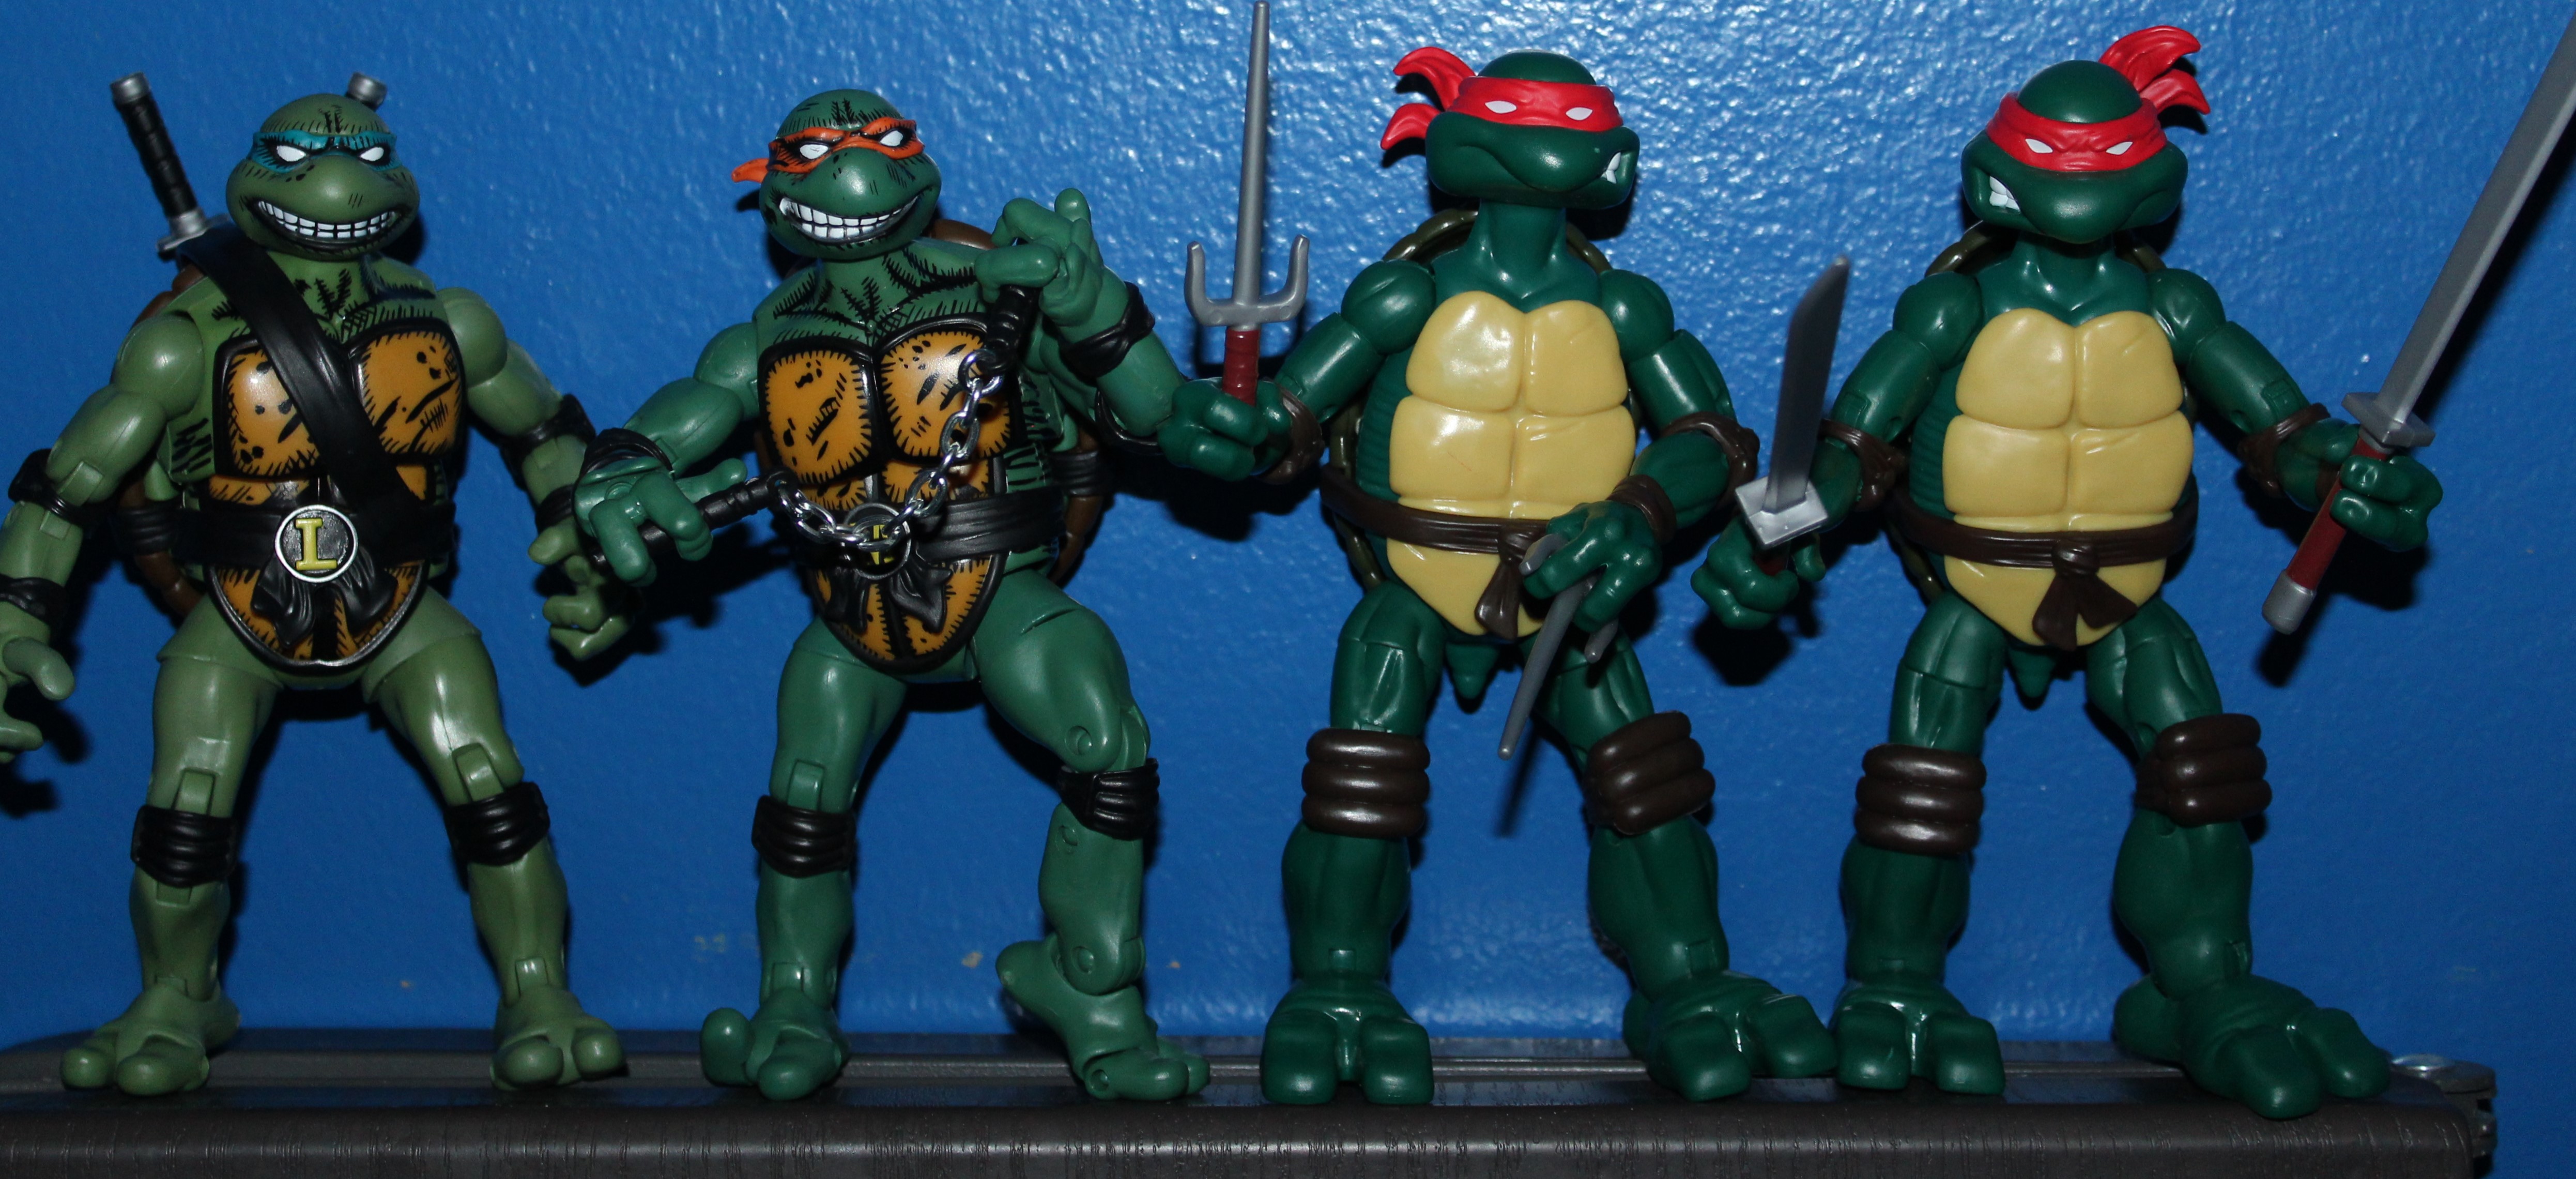 Turtle quartet